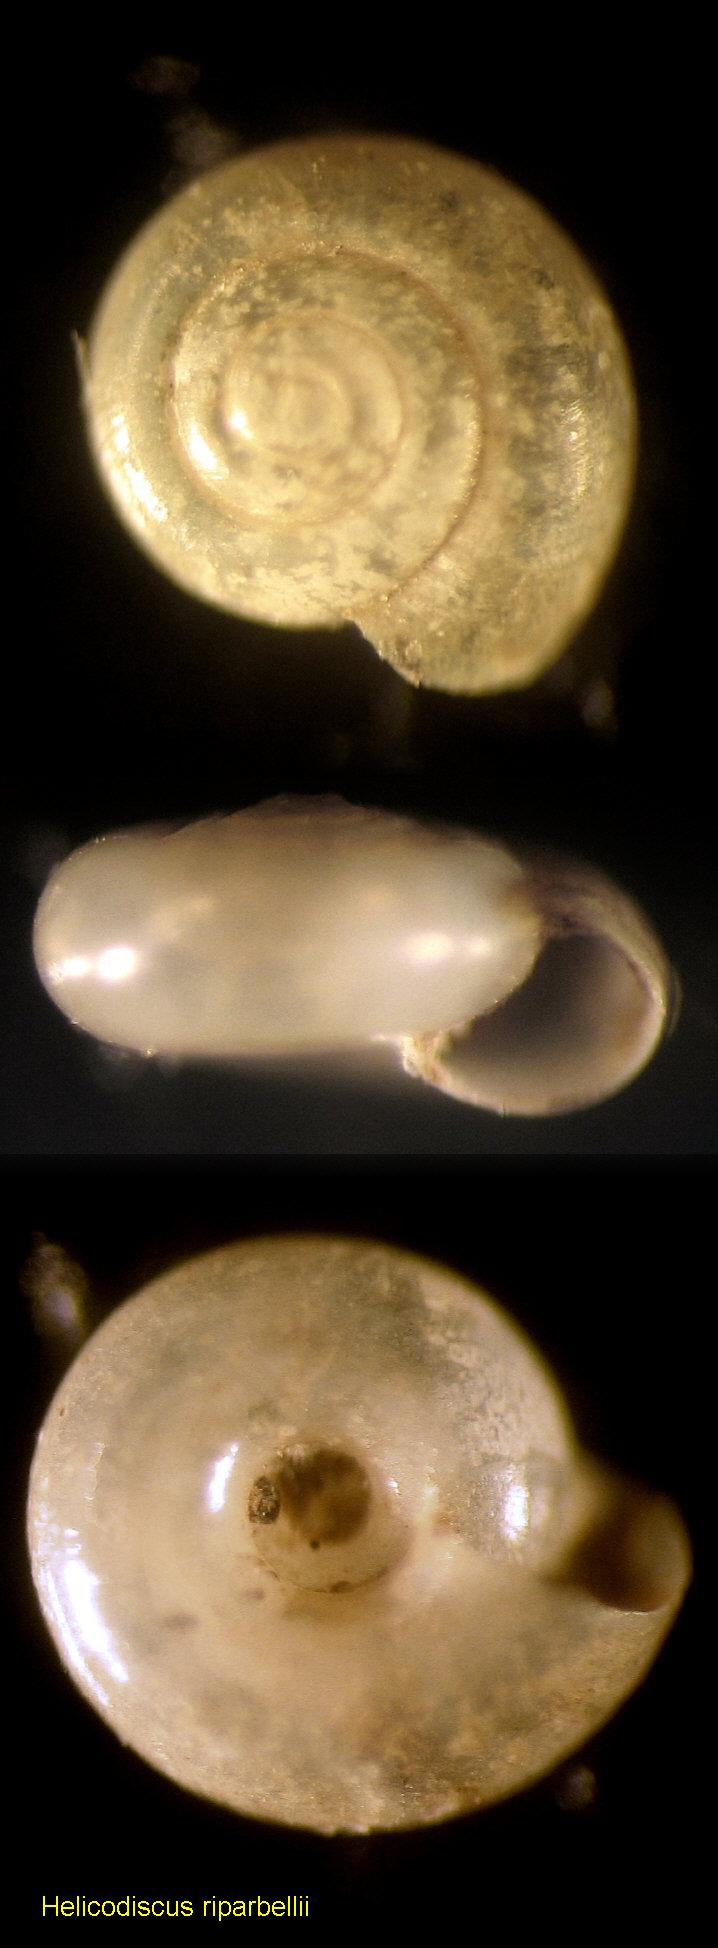 Helicodiscus (Hebetodiscus) riparbellii Giusti, 1976